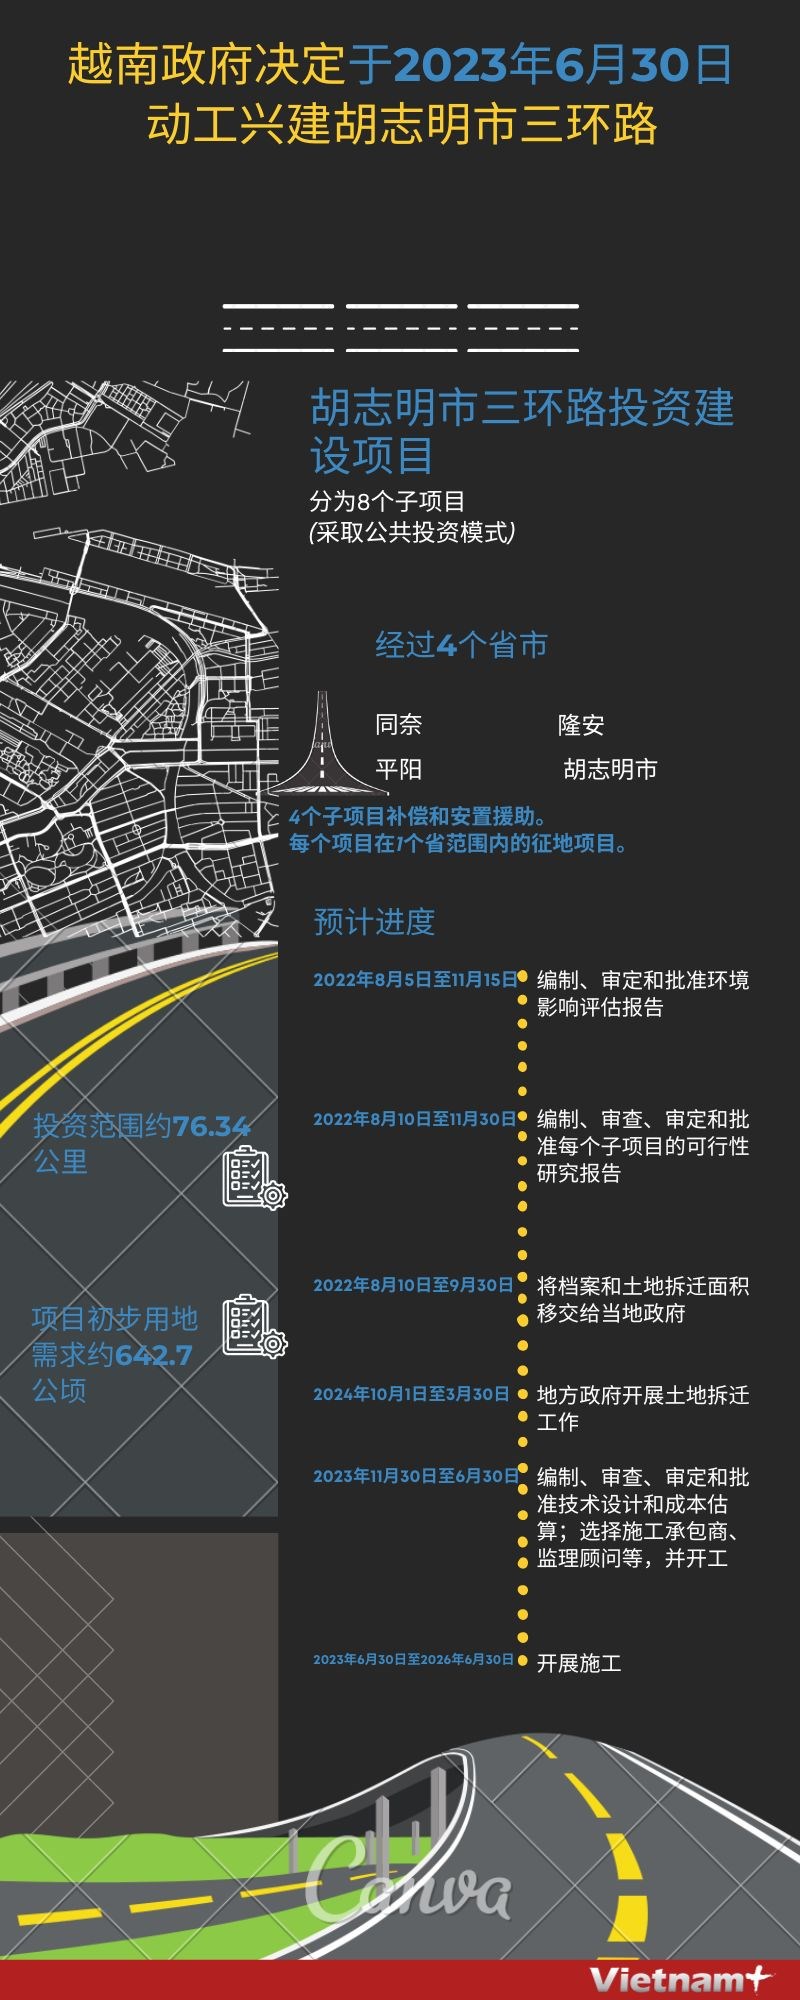 图表新闻：越南政府决定动工兴建胡志明市三环路 hinh anh 1